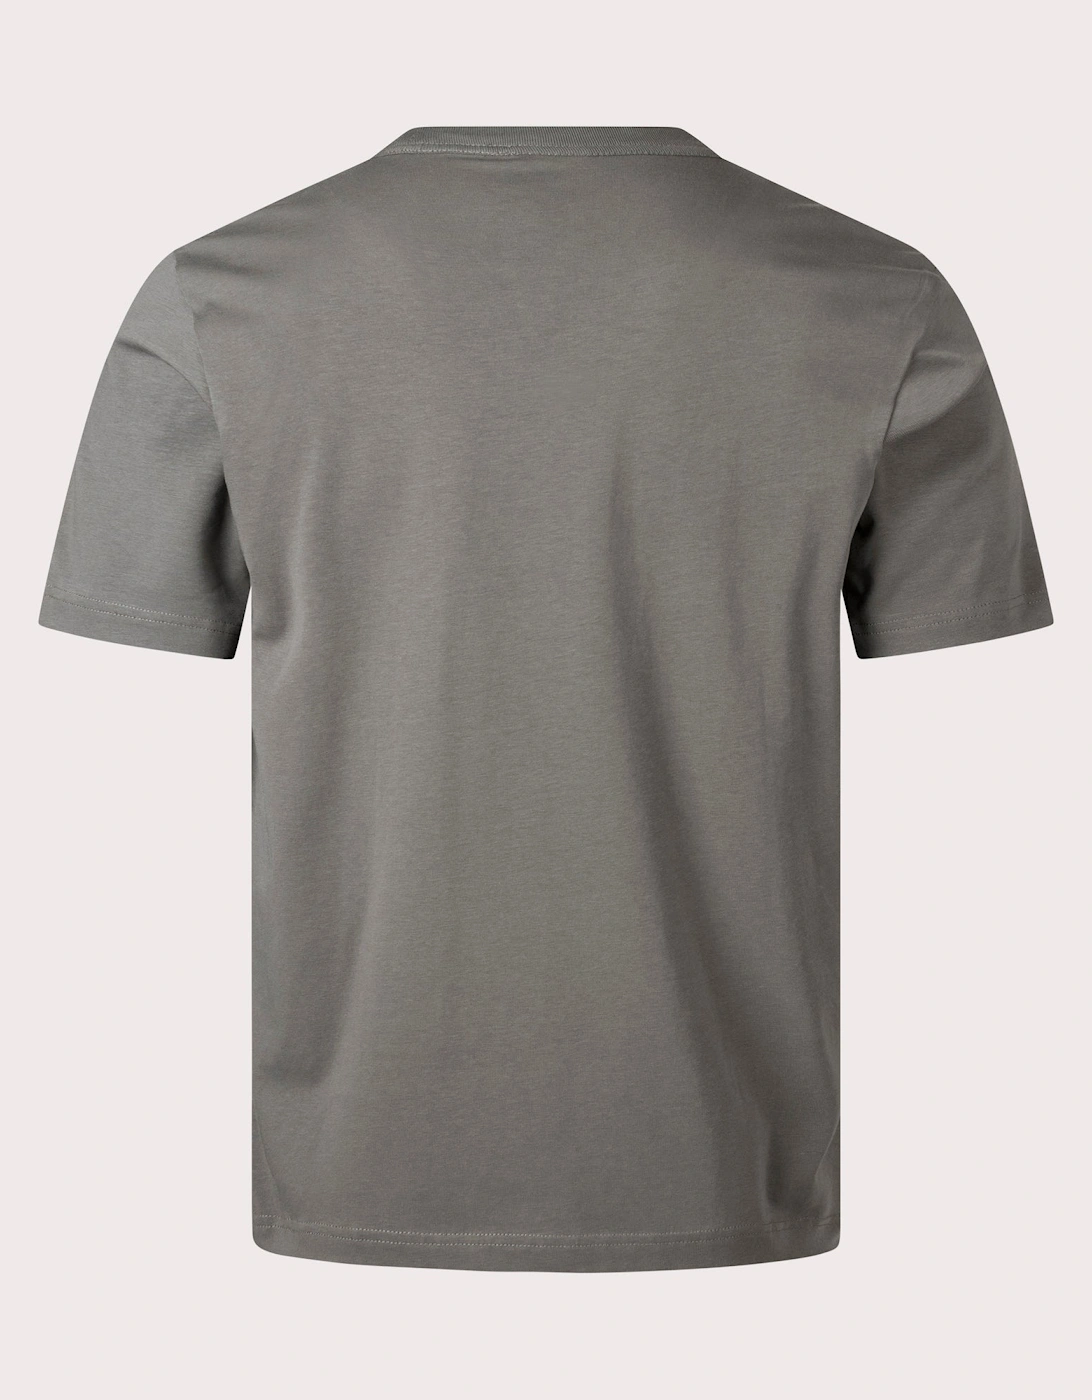 Zebra Motif T-Shirt